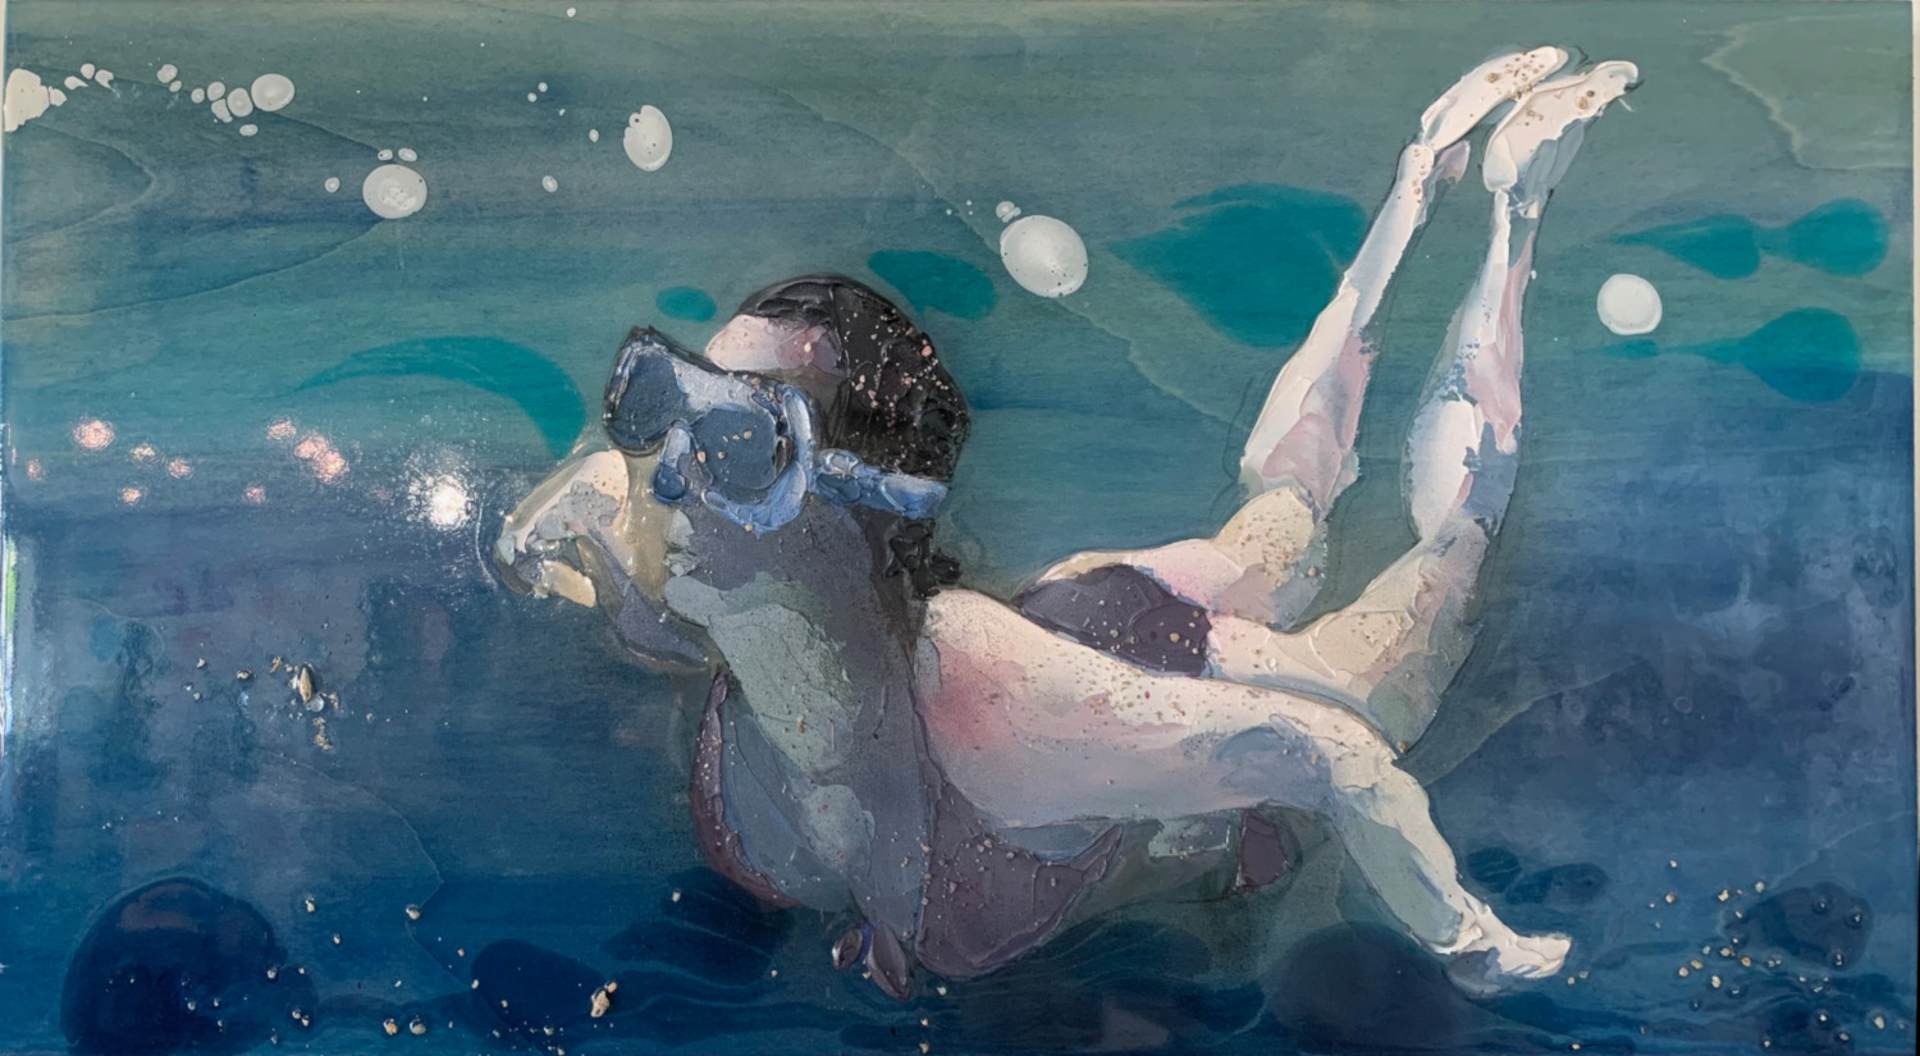 Nuotare (To Swim) by Nicoletta Belletti